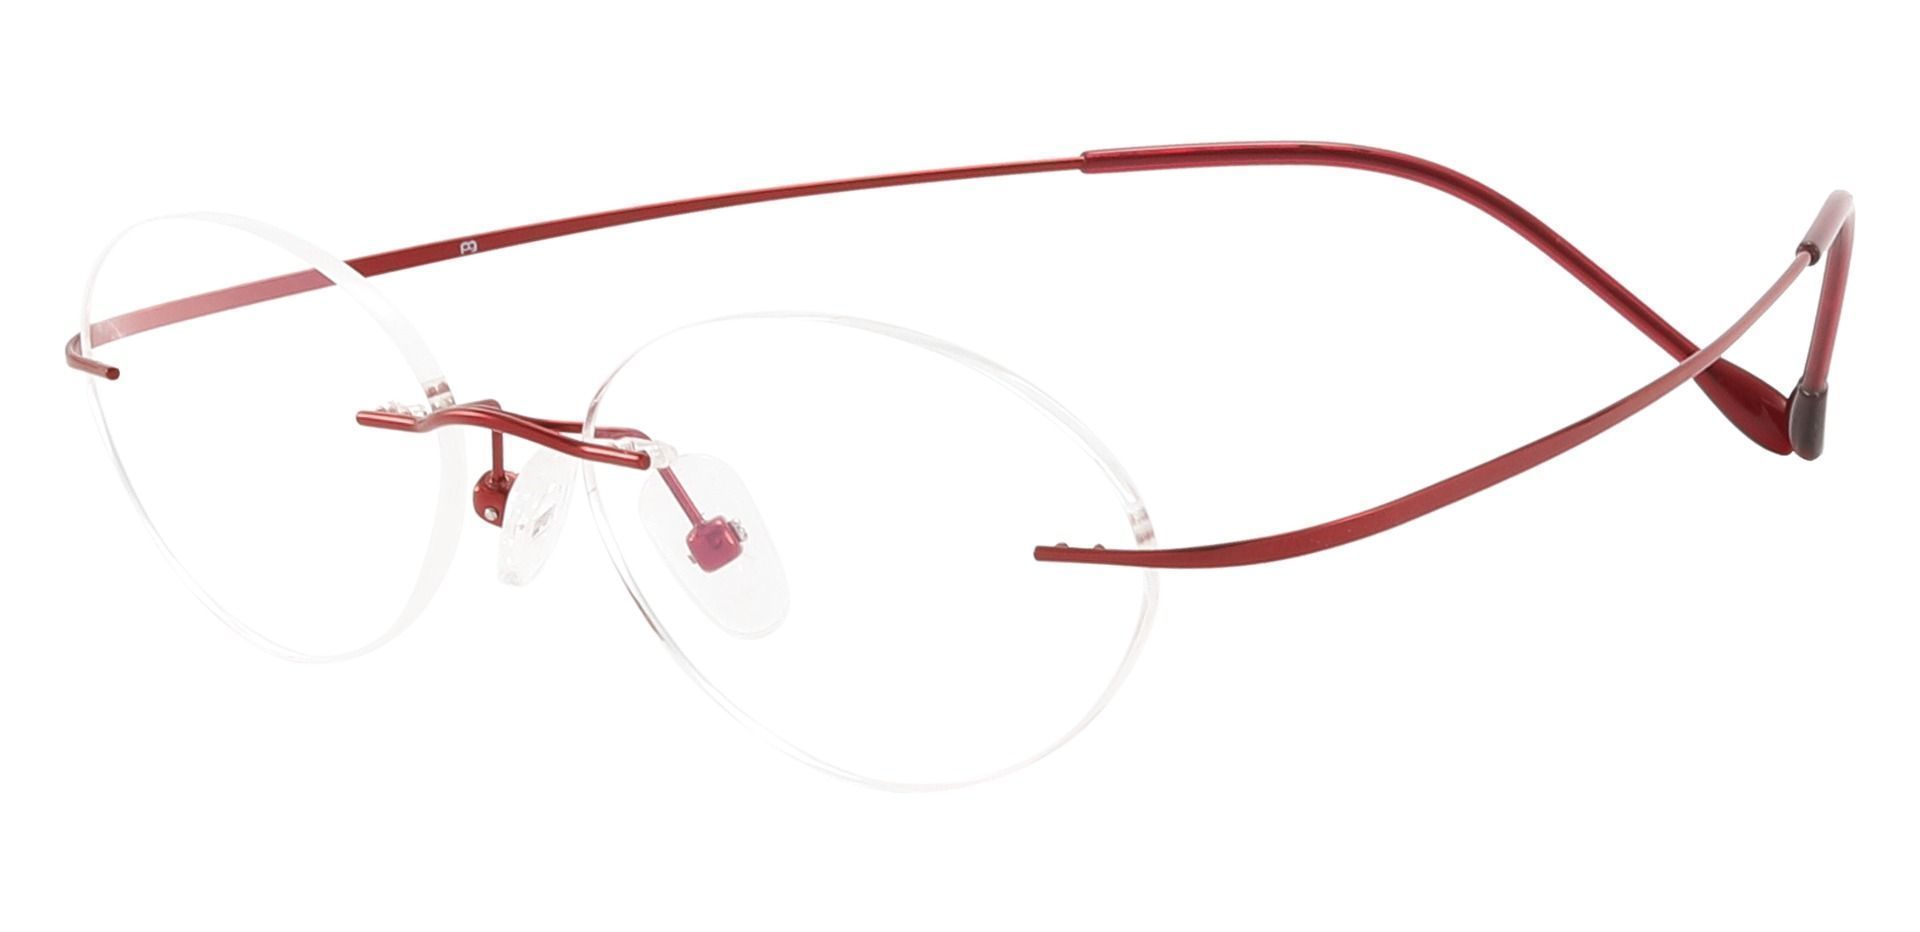 Concordia Rimless Prescription Glasses - Red